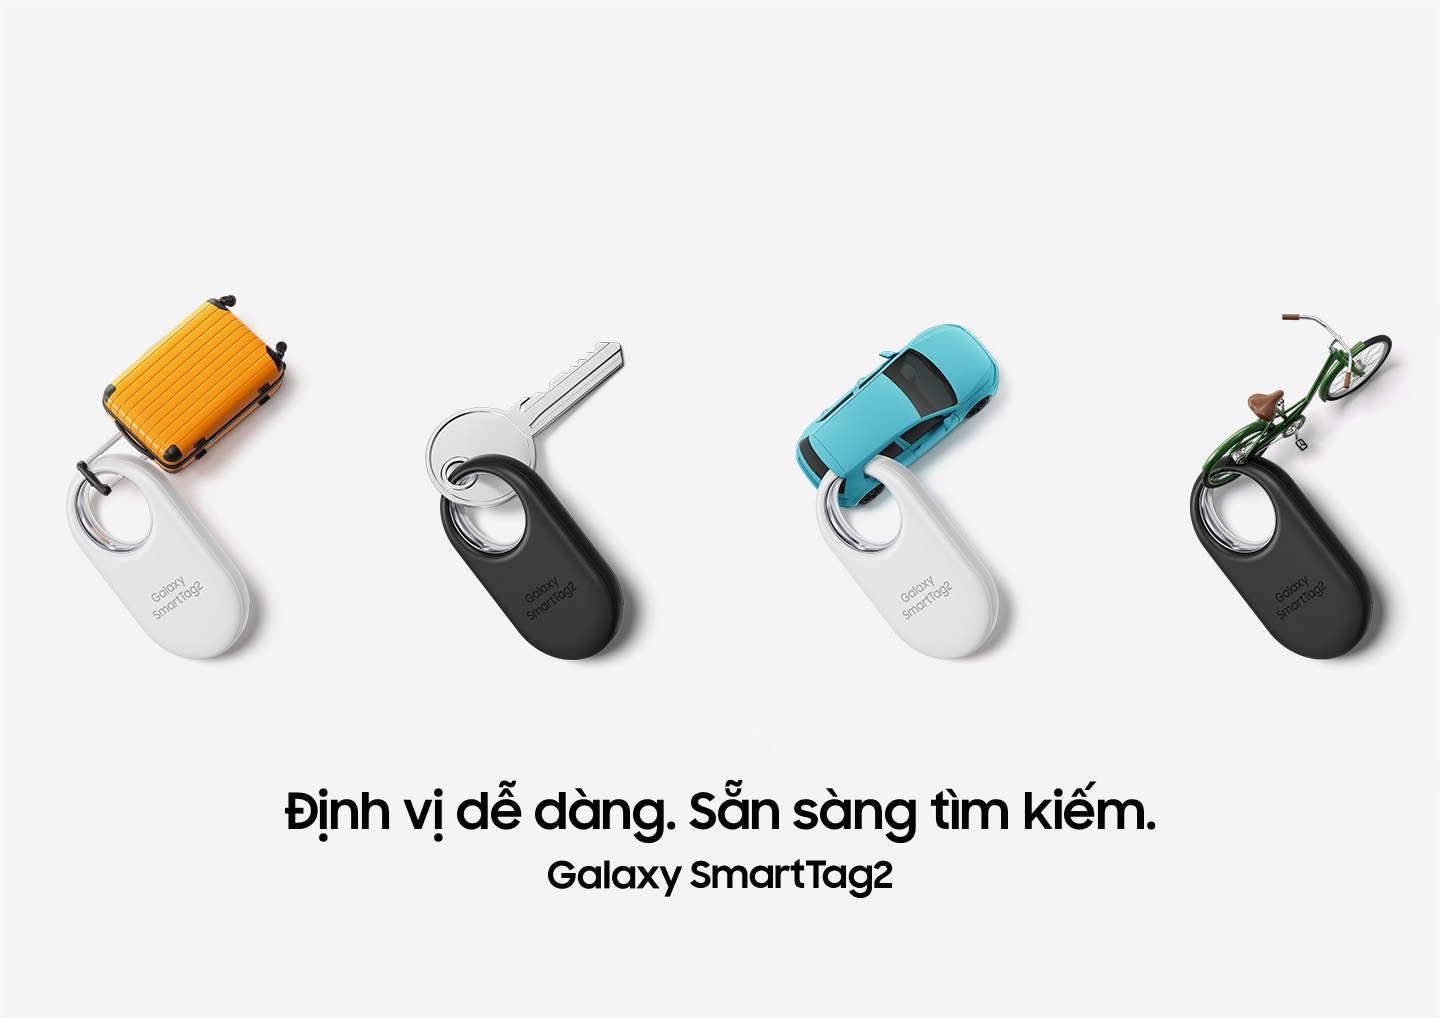  Bốn thiết bị Galaxy SmartTag2, hai chiếc màu trắng và hai chiếc màu đen, được đặt ngay ngắn. Các thiết bị này được gắn thẻ vào các mục sau: Một chiếc vali thu nhỏ, một chiếc chìa khóa, một chiếc ô tô thu nhỏ và một chiếc xe đạp thu nhỏ.